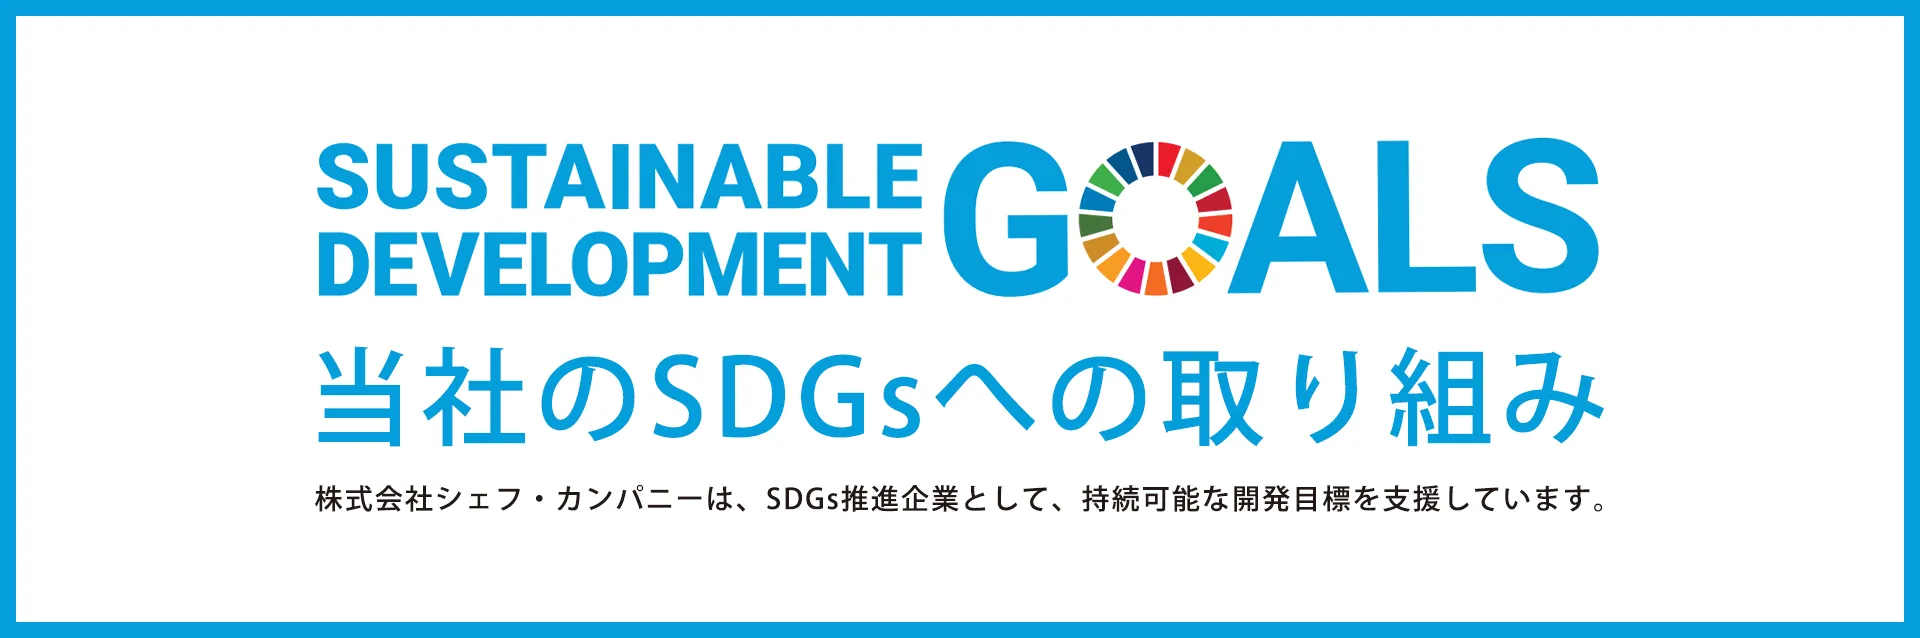 株式会社シェフ・カンパニーは、SDGs推進企業として、持続可能な開発目標を支援しています。